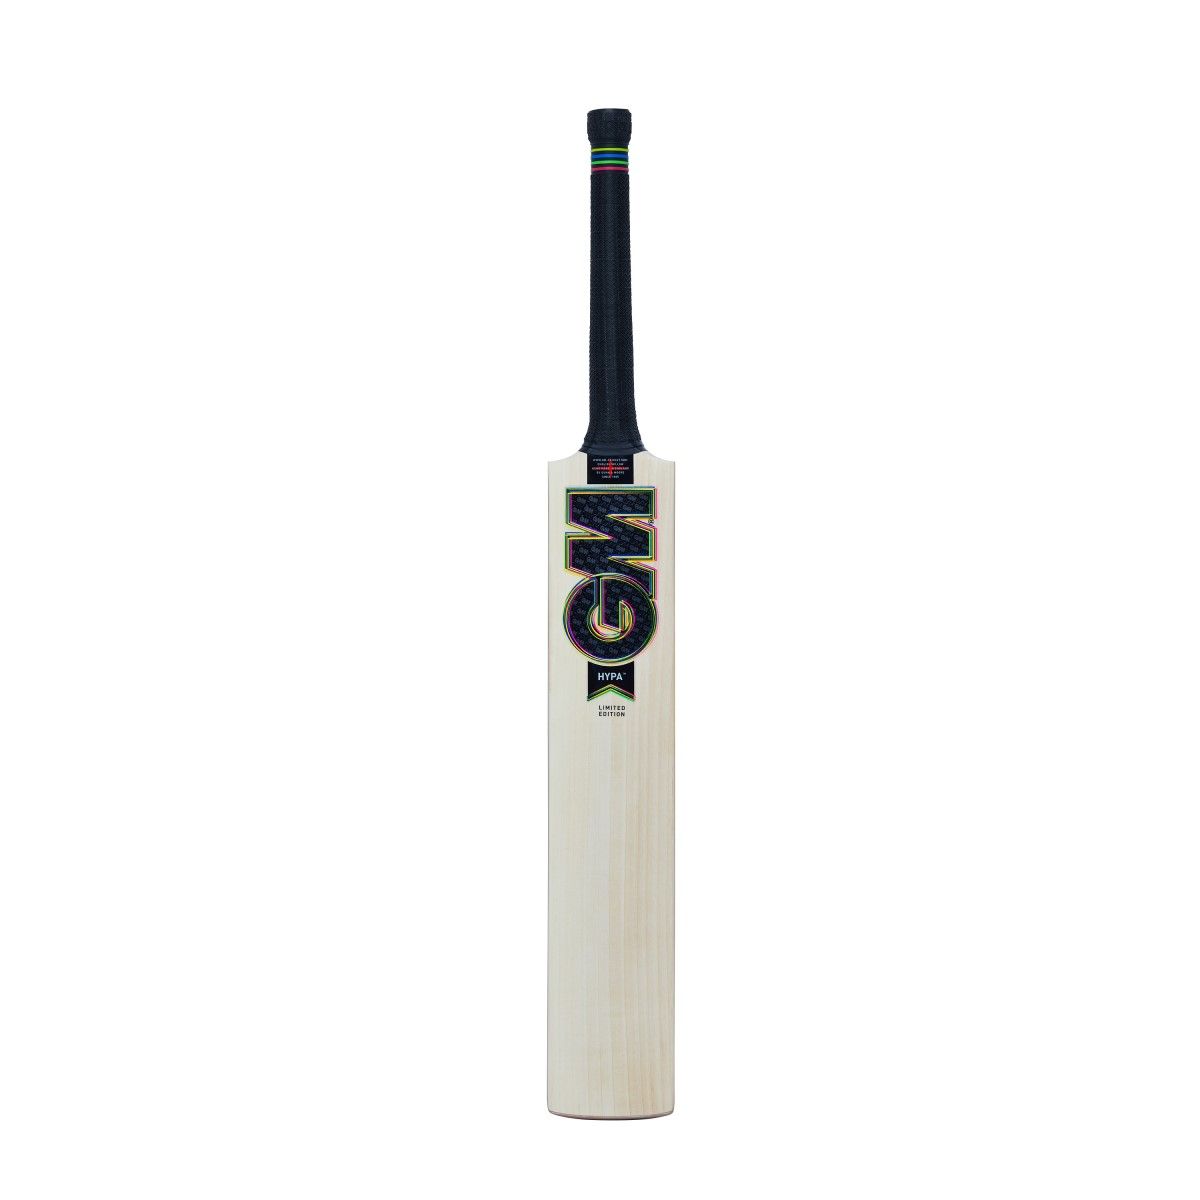 Gunn & Moore Hypa DXM 404 Cricket Bat